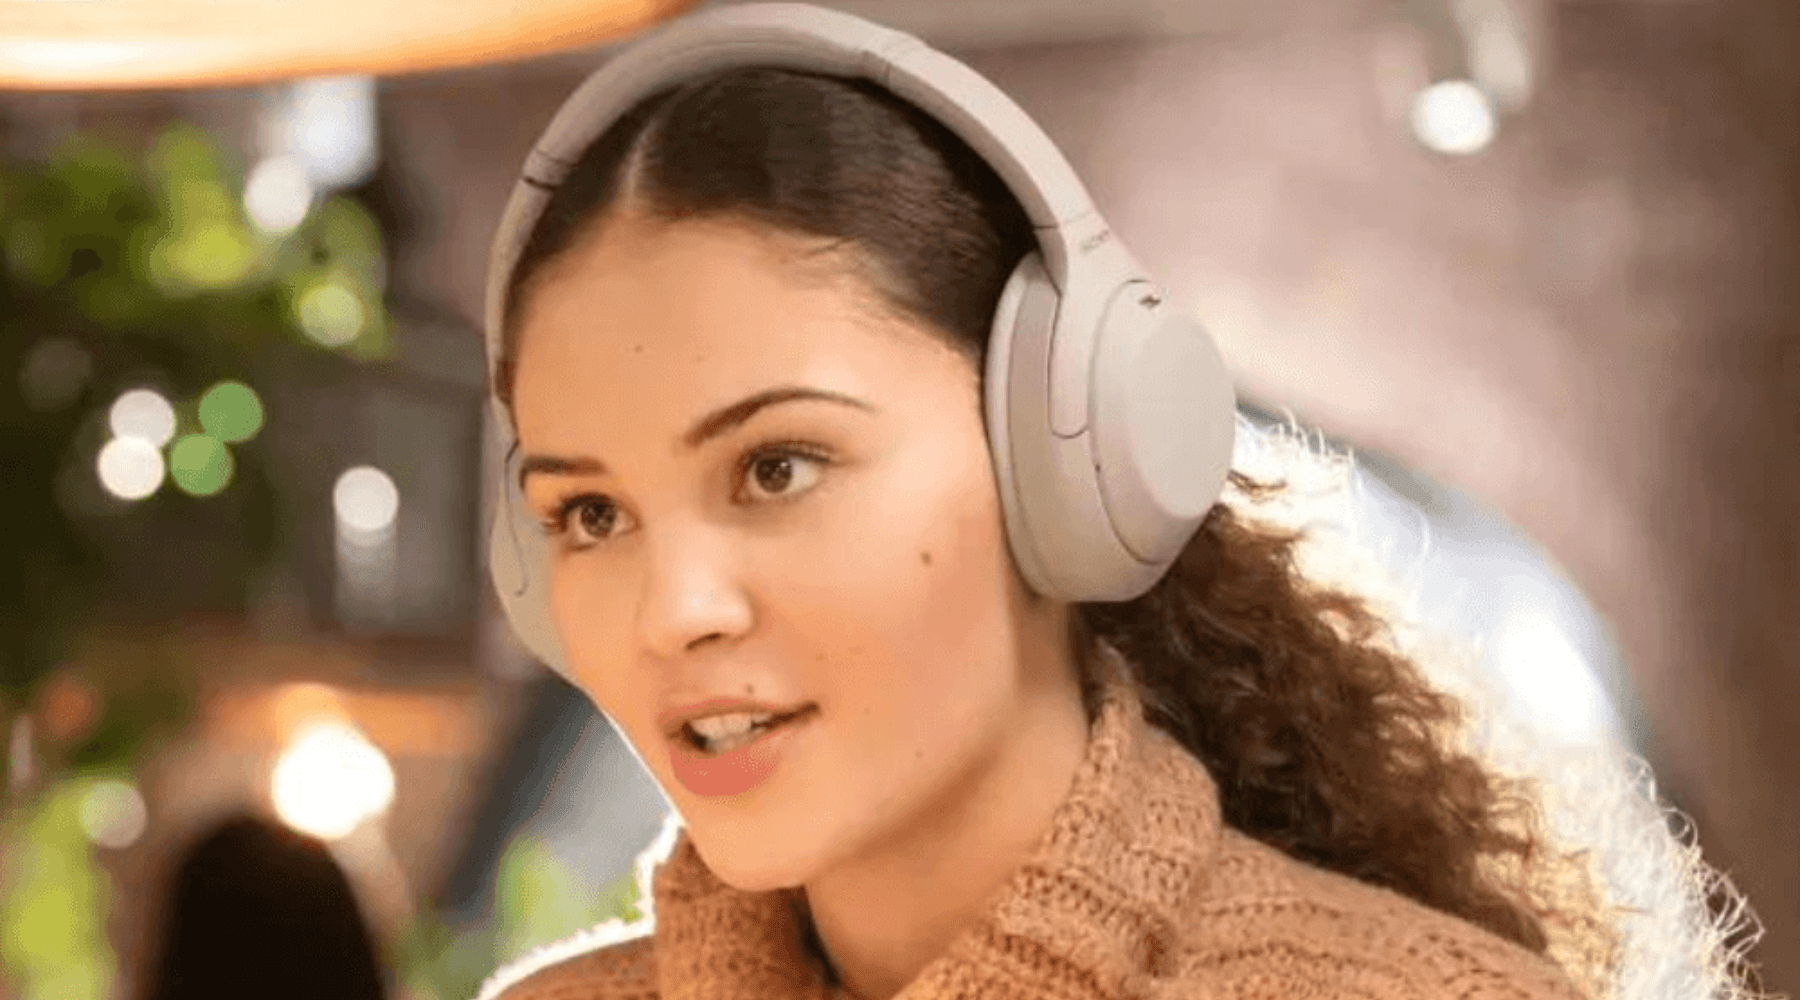 Buying headphones in Ireland